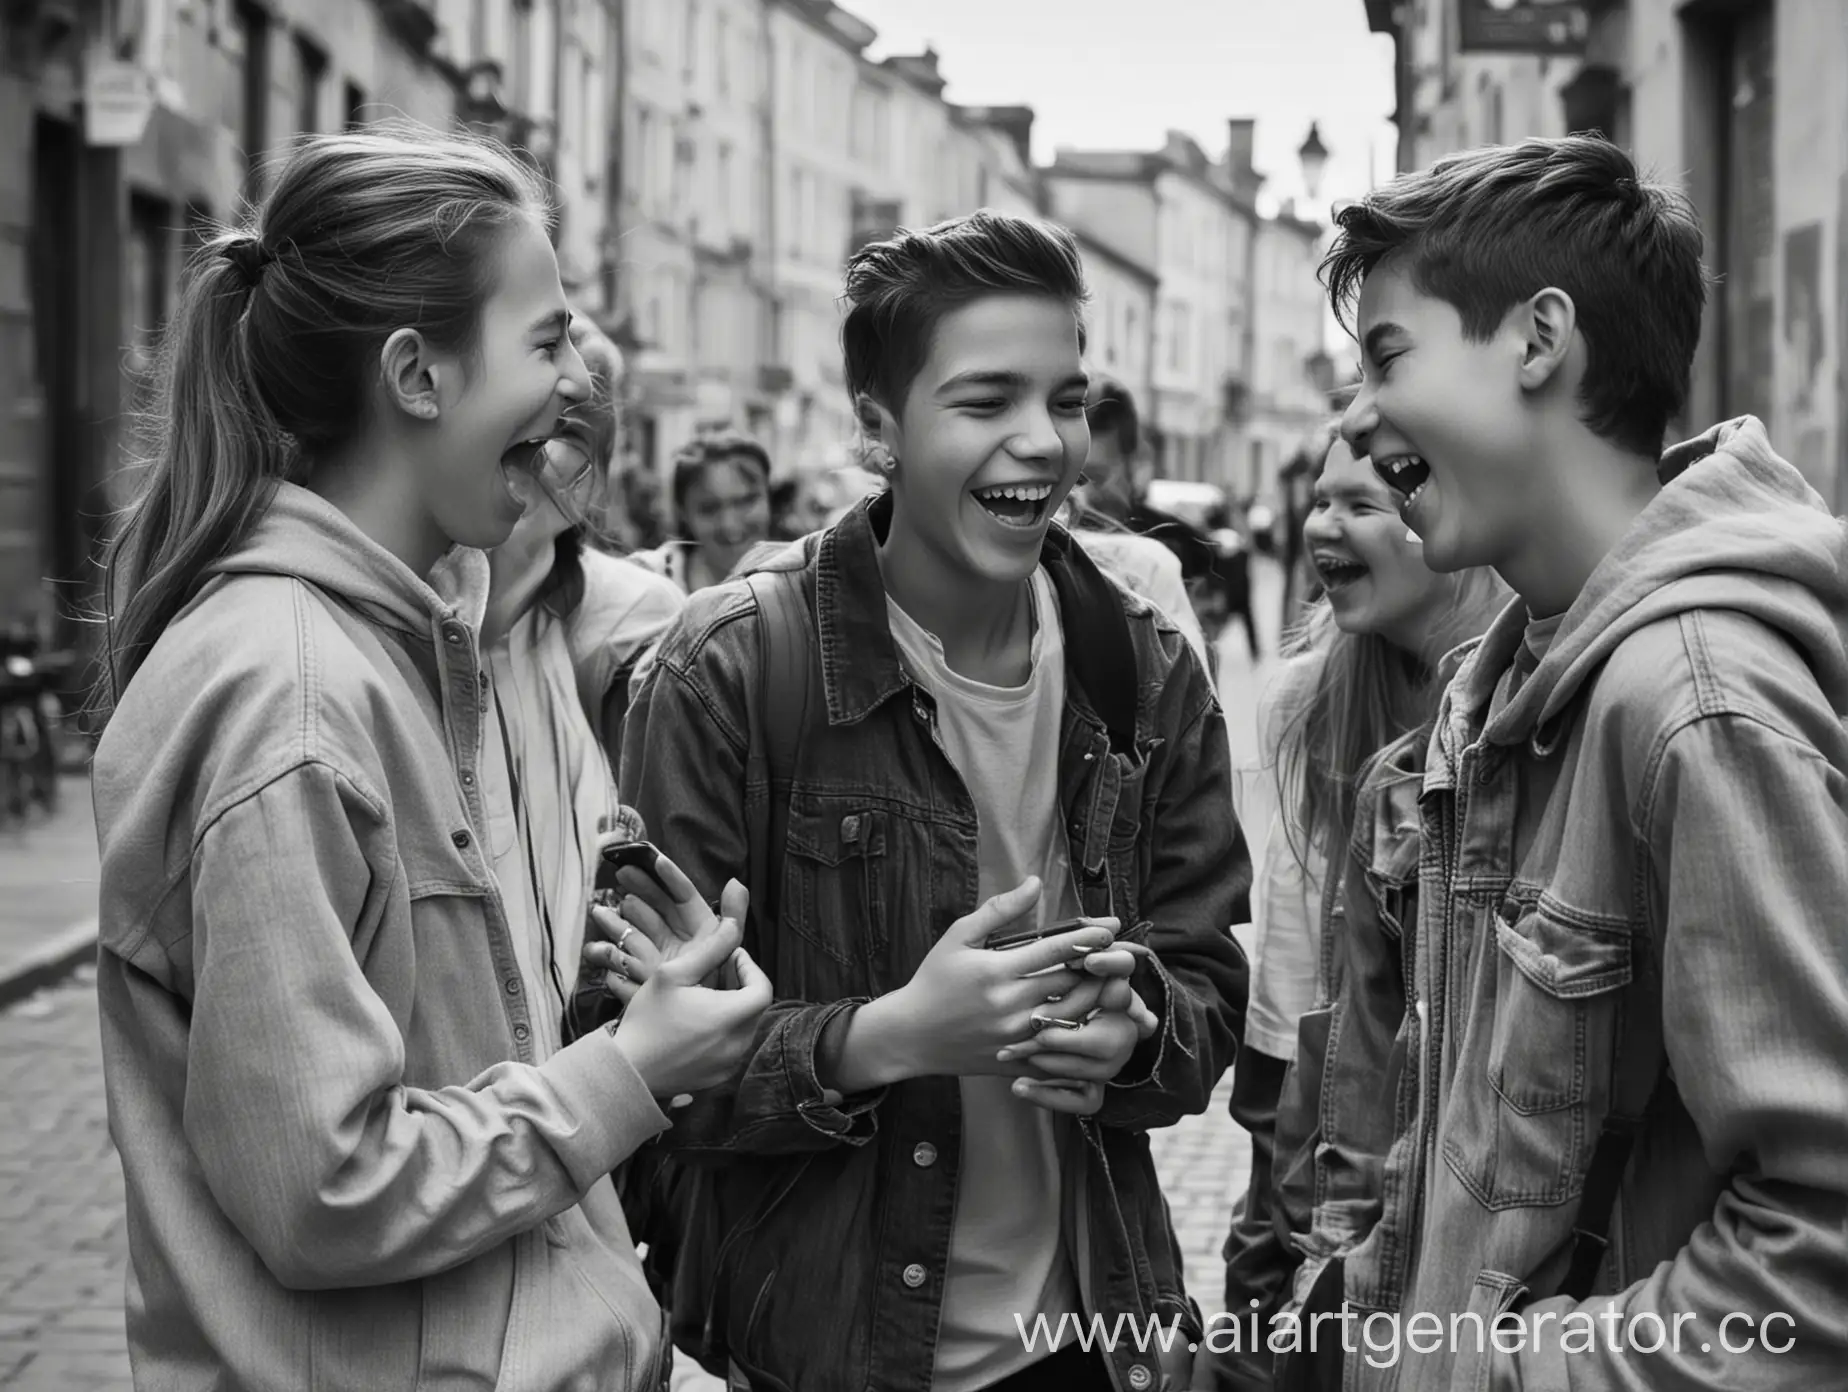 Черно-белое фото.
Группа подростков на улице общаются и смеются